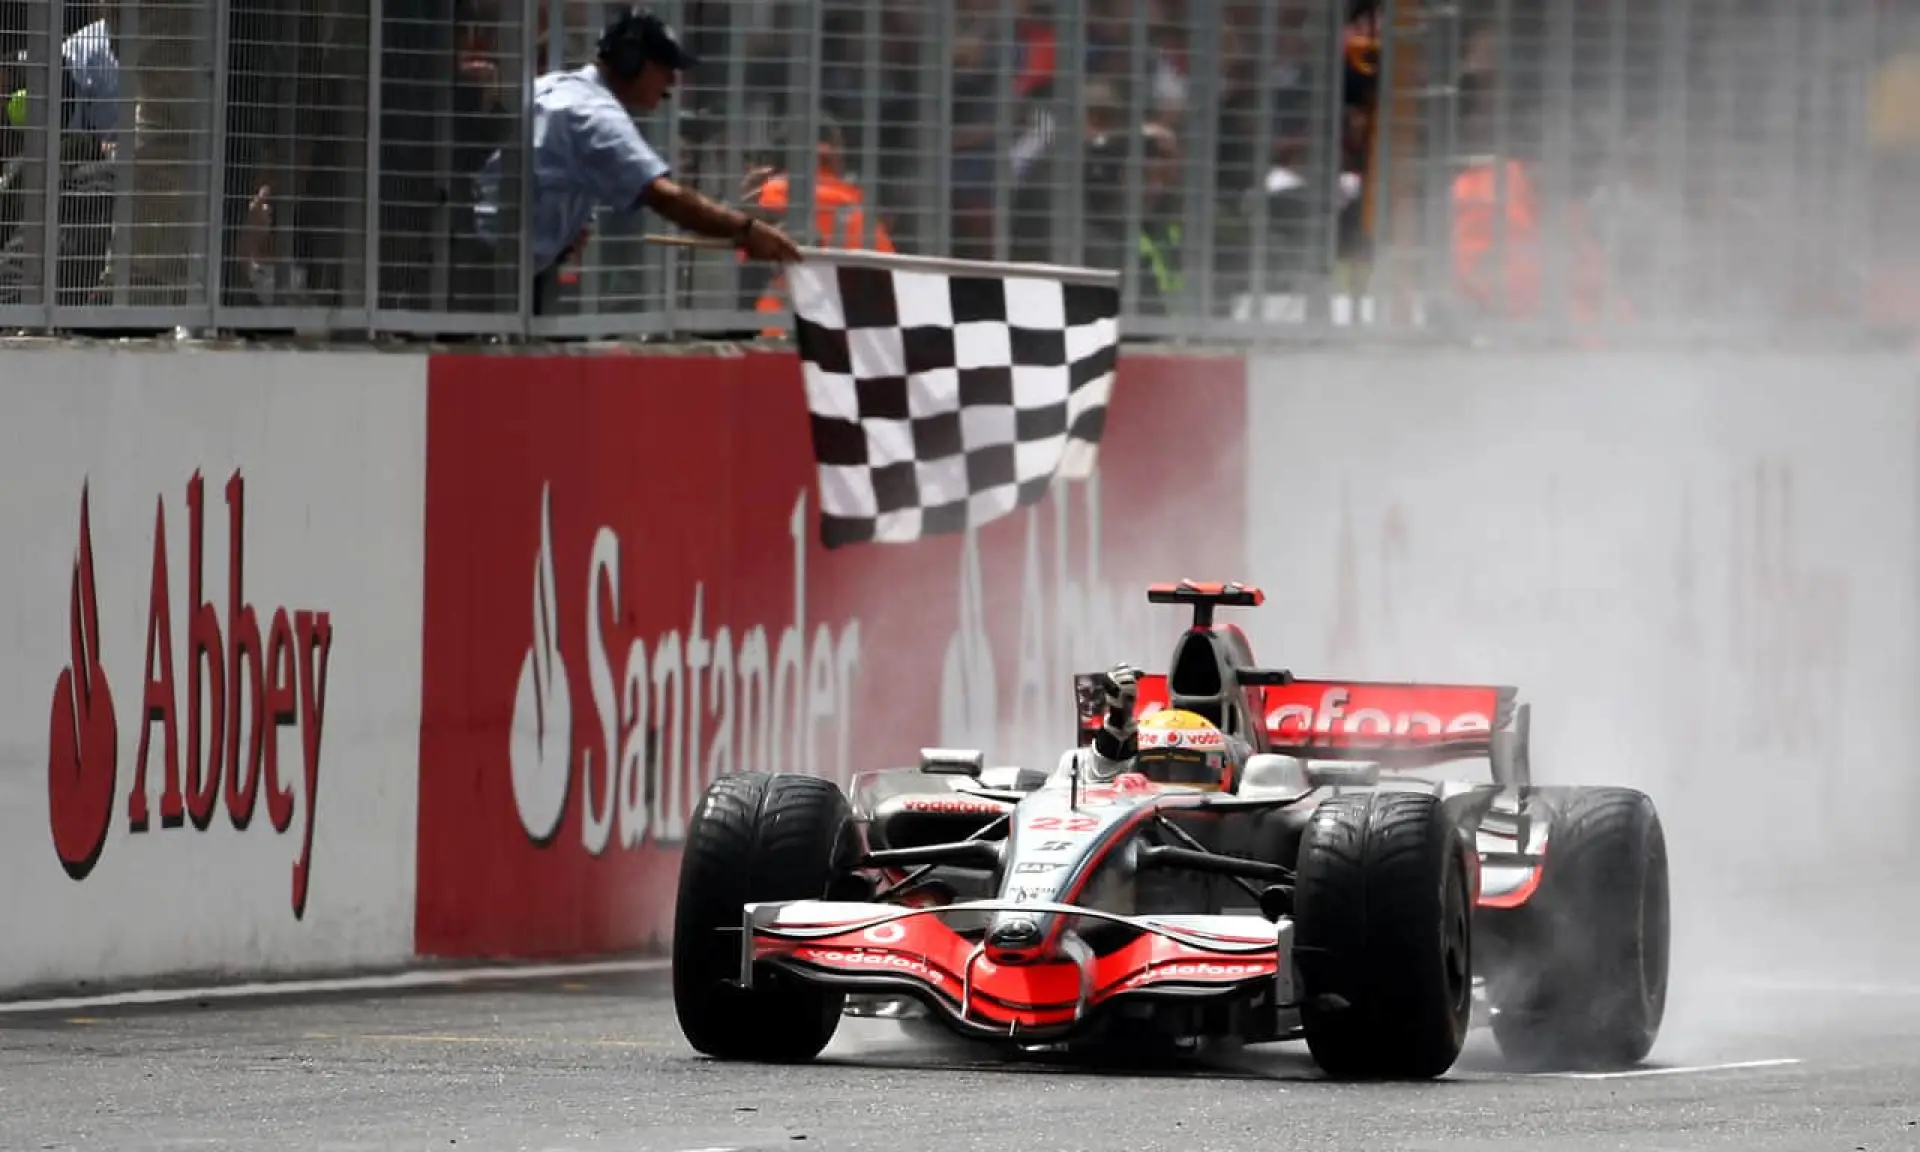 Lewis Hamilton, past British Grand Prix races